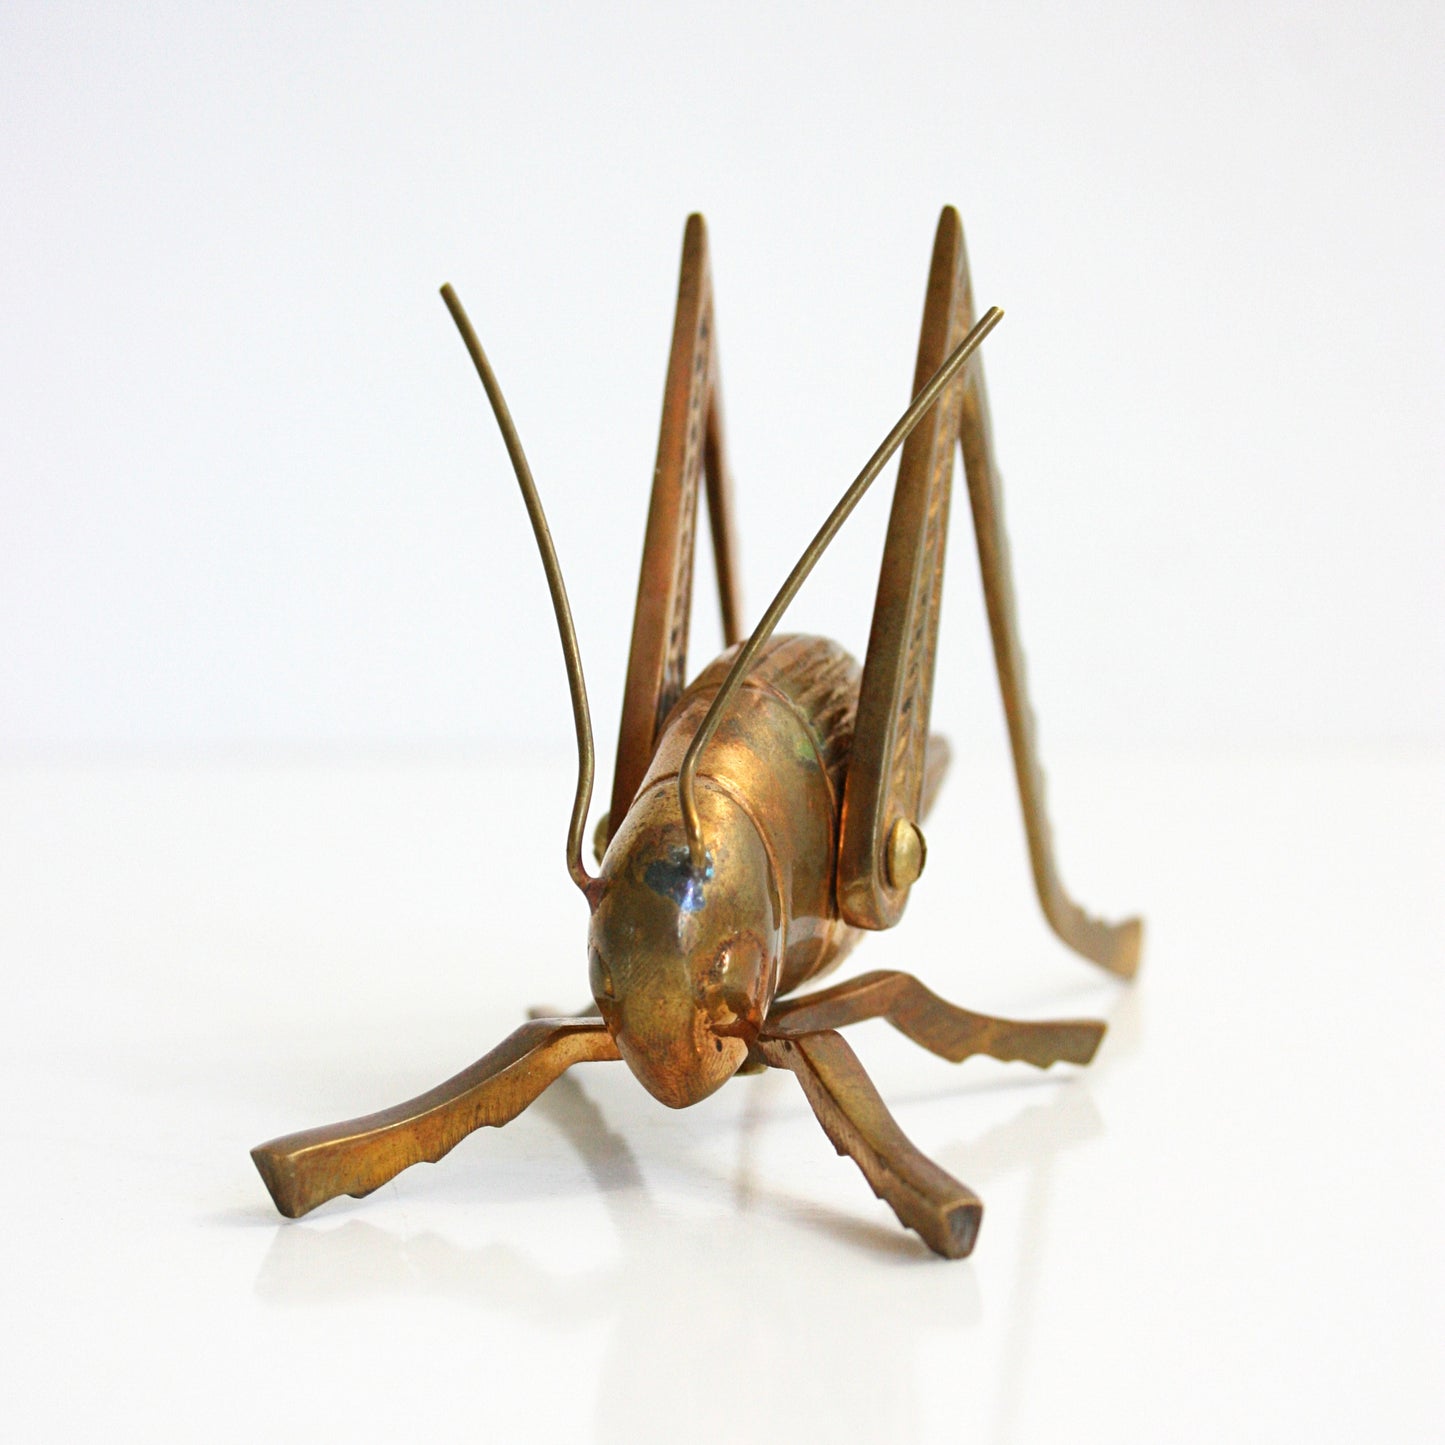 SOLD - Vintage Solid Brass Grasshopper / Mid Century Brass Cricket Figurine